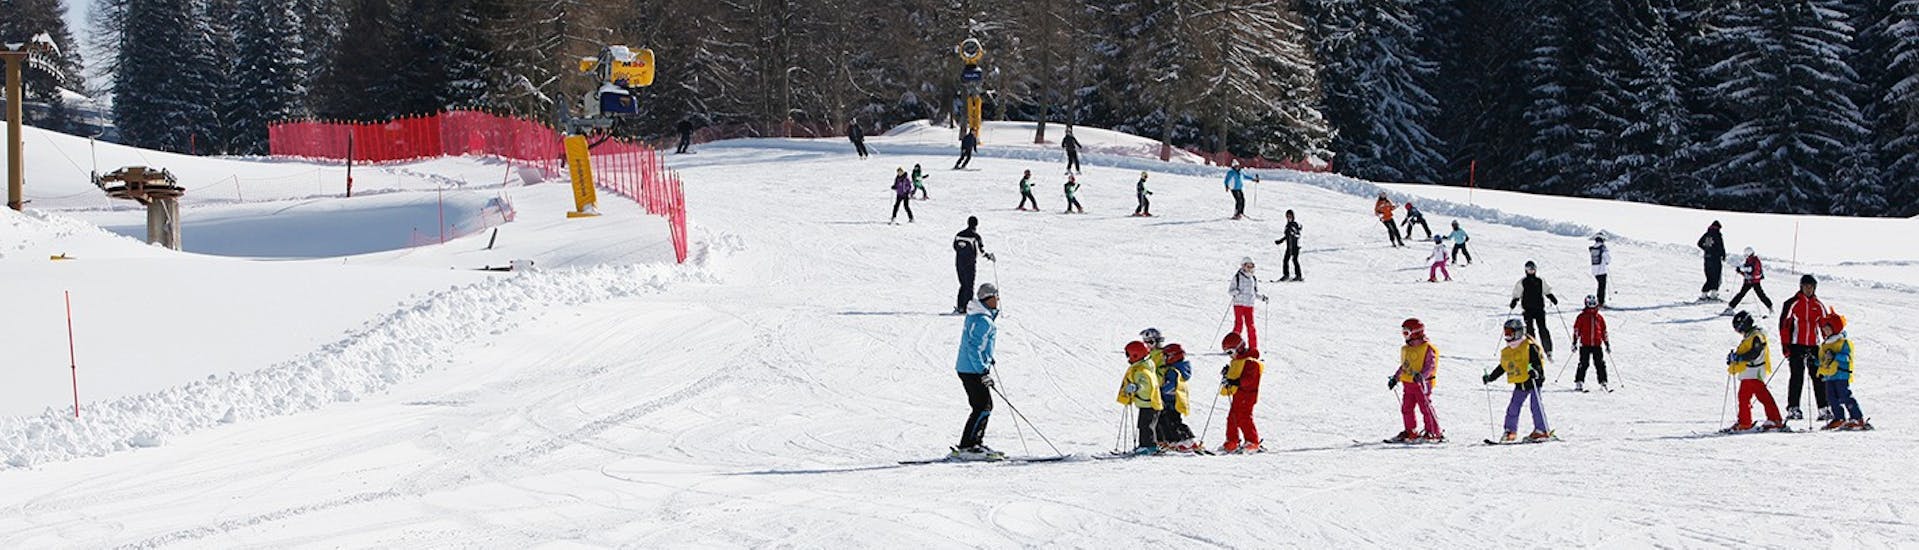 Pista innevata dove si tengono le Lezioni intensive di sci per bambini con esperienza (6-14 anni) con Scuola Italiana Sci Folgaria-Serrada.